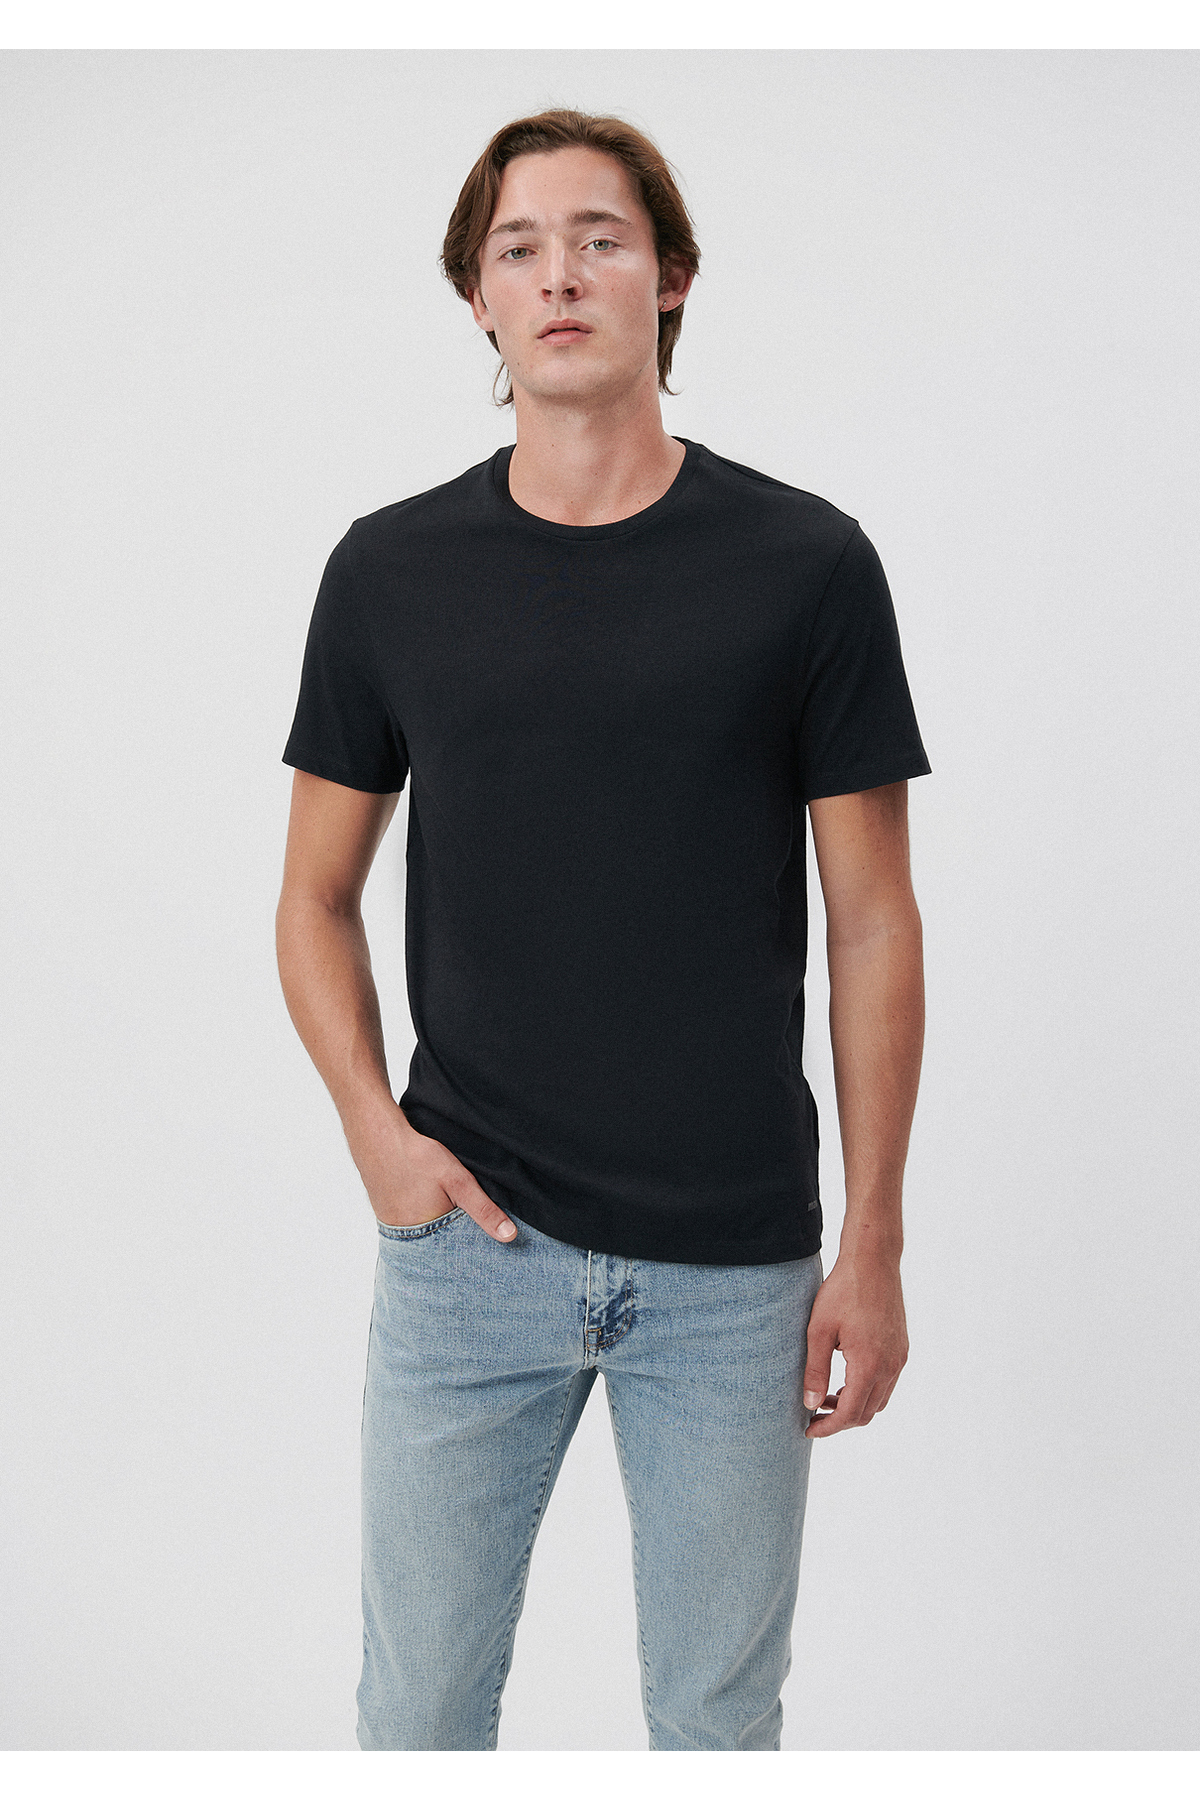 تی شرت مردانه رنگ مشکی از برند ماوی Mavi (برند ترکیه)